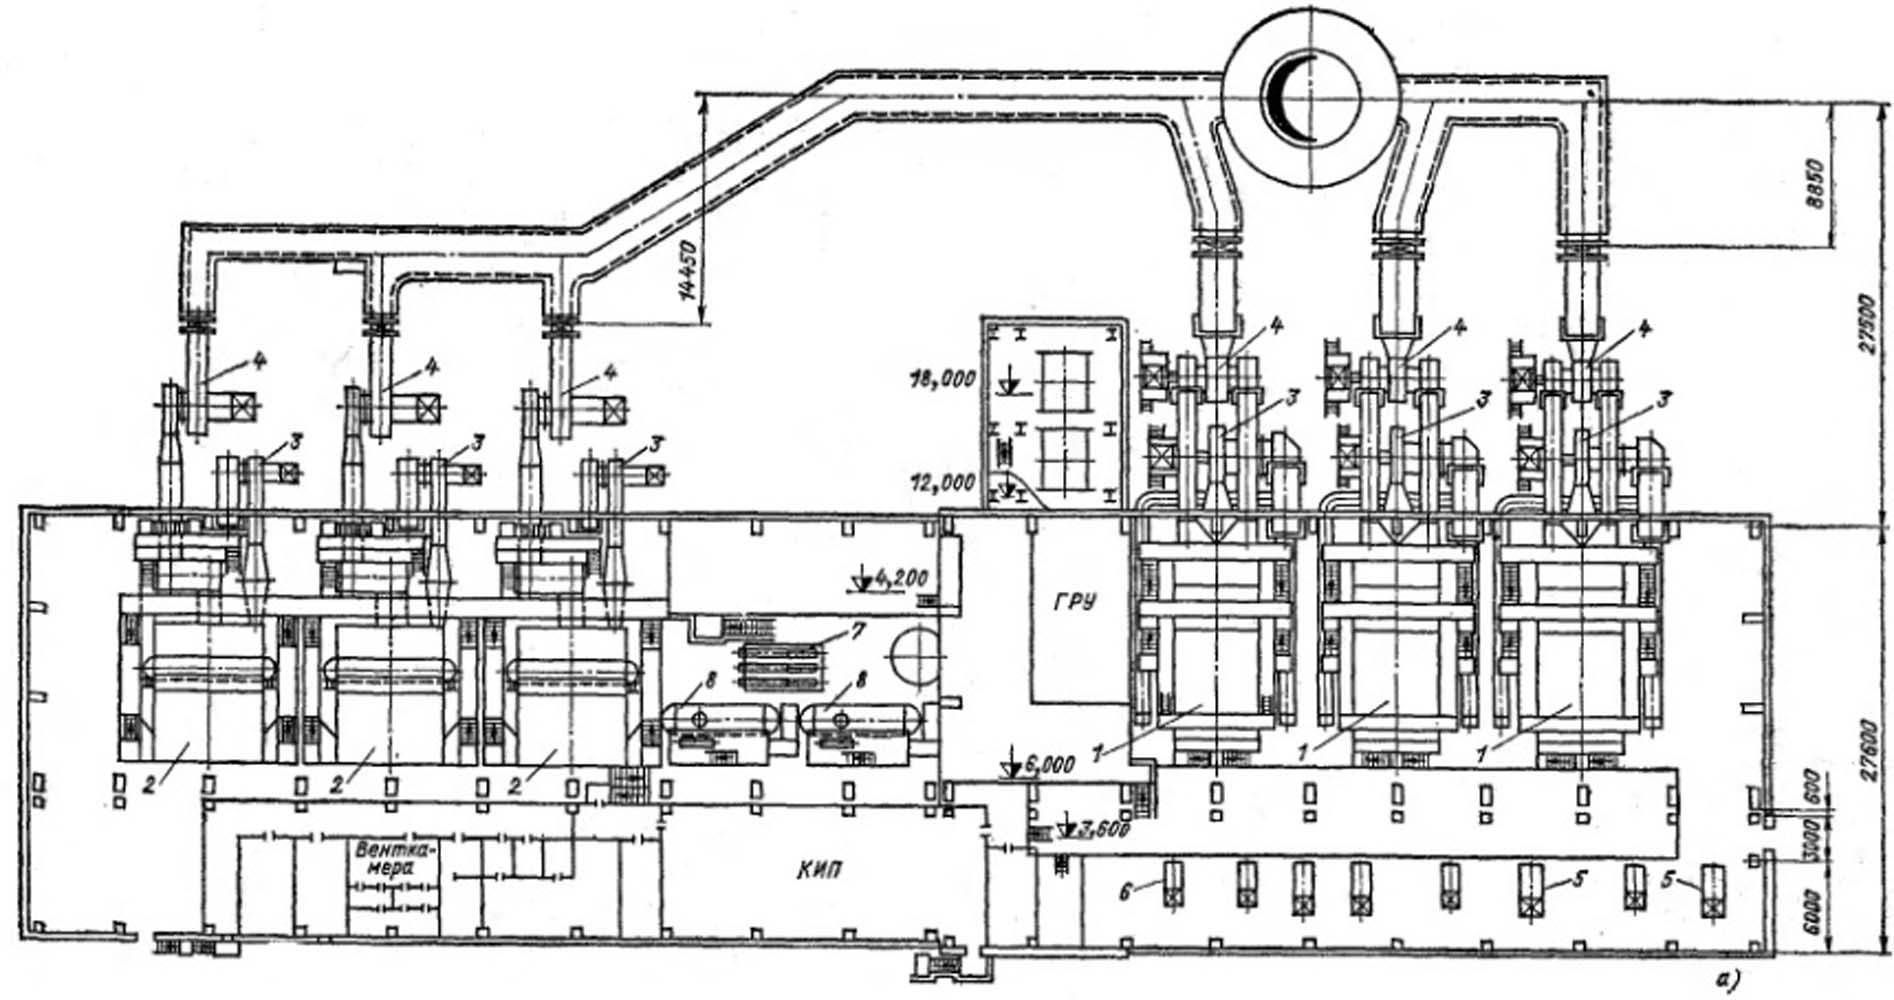 Компоновка котельной с водогрейными котлами КВ – ГМ - 100 и паровыми котлами ГМ - 50 - 14 (ДЕ - 25 - 14ГМ)  1 